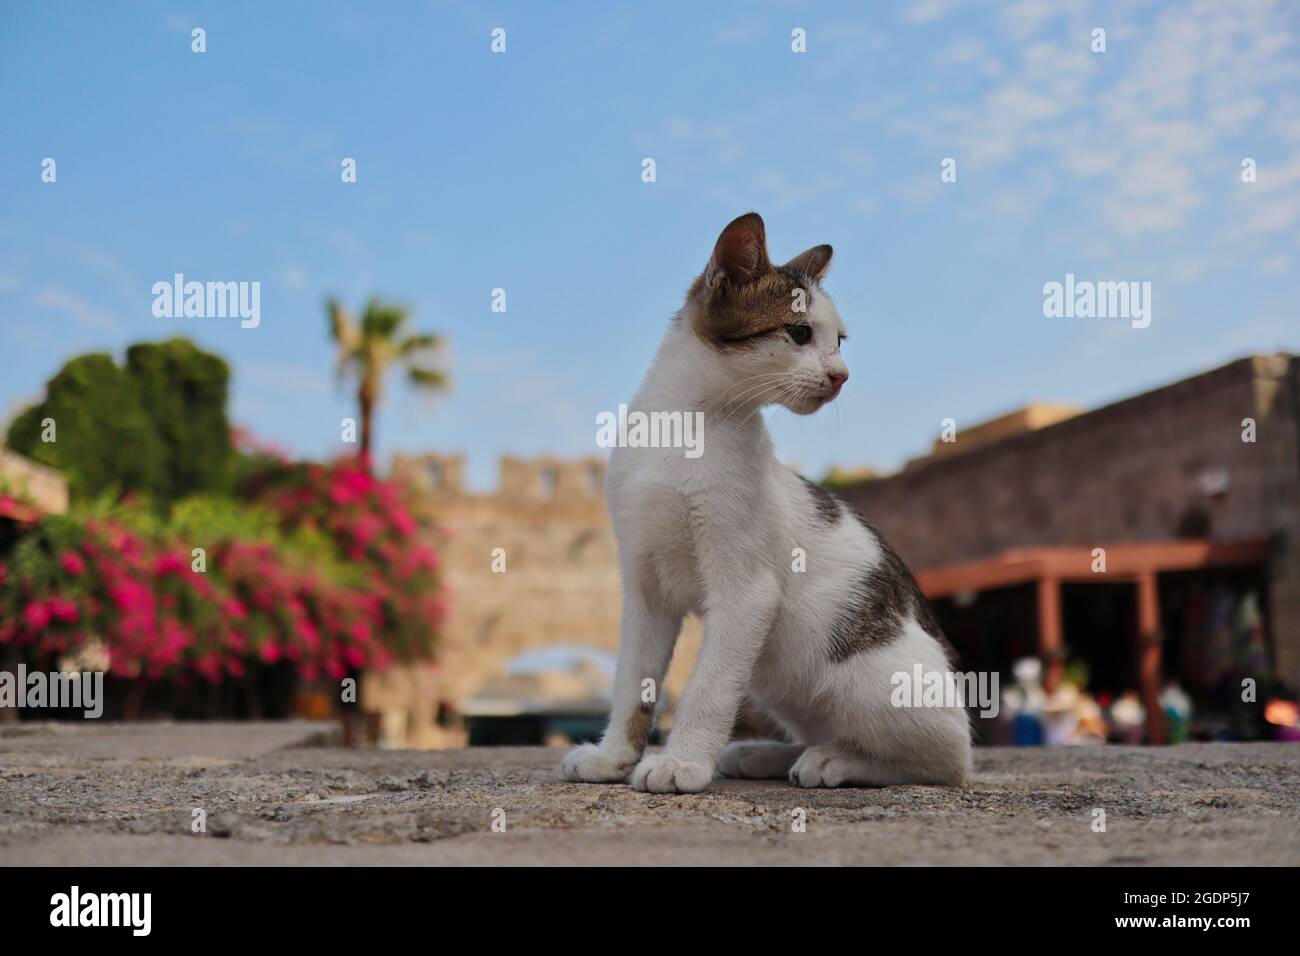 Die niedliche Feral Cat sitzt in Rhodos-Stadt mit dem Virgin Mary Gate im Hintergrund. Junge, stray Kitten während des Tages in Griechenland. Stockfoto